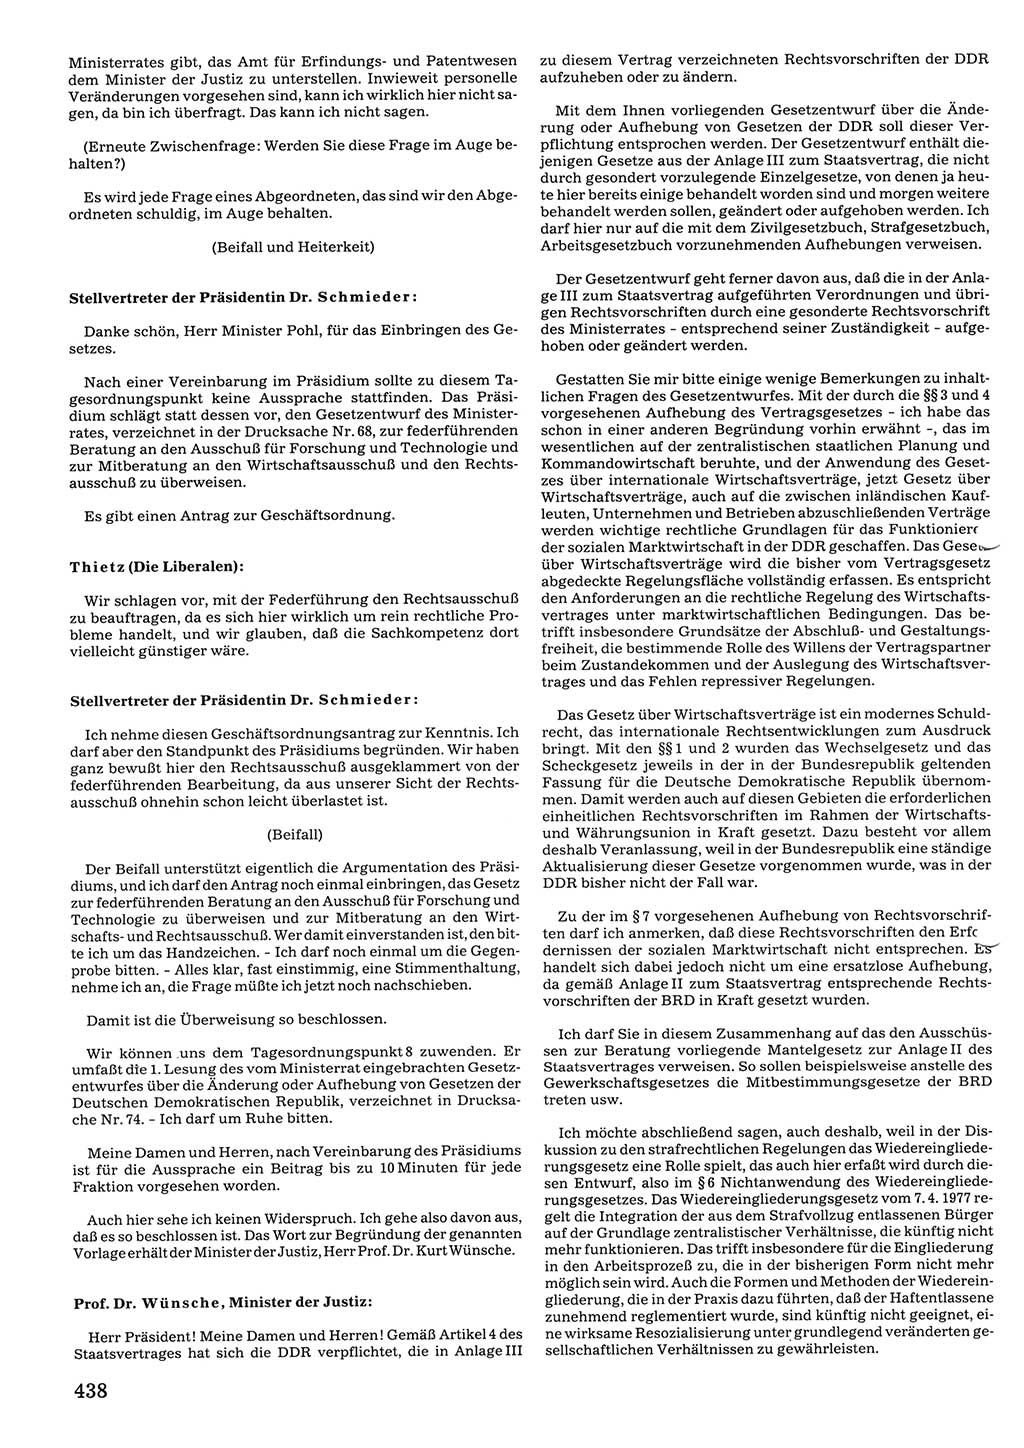 Tagungen der Volkskammer (VK) der Deutschen Demokratischen Republik (DDR), 10. Wahlperiode 1990, Seite 438 (VK. DDR 10. WP. 1990, Prot. Tg. 1-38, 5.4.-2.10.1990, S. 438)